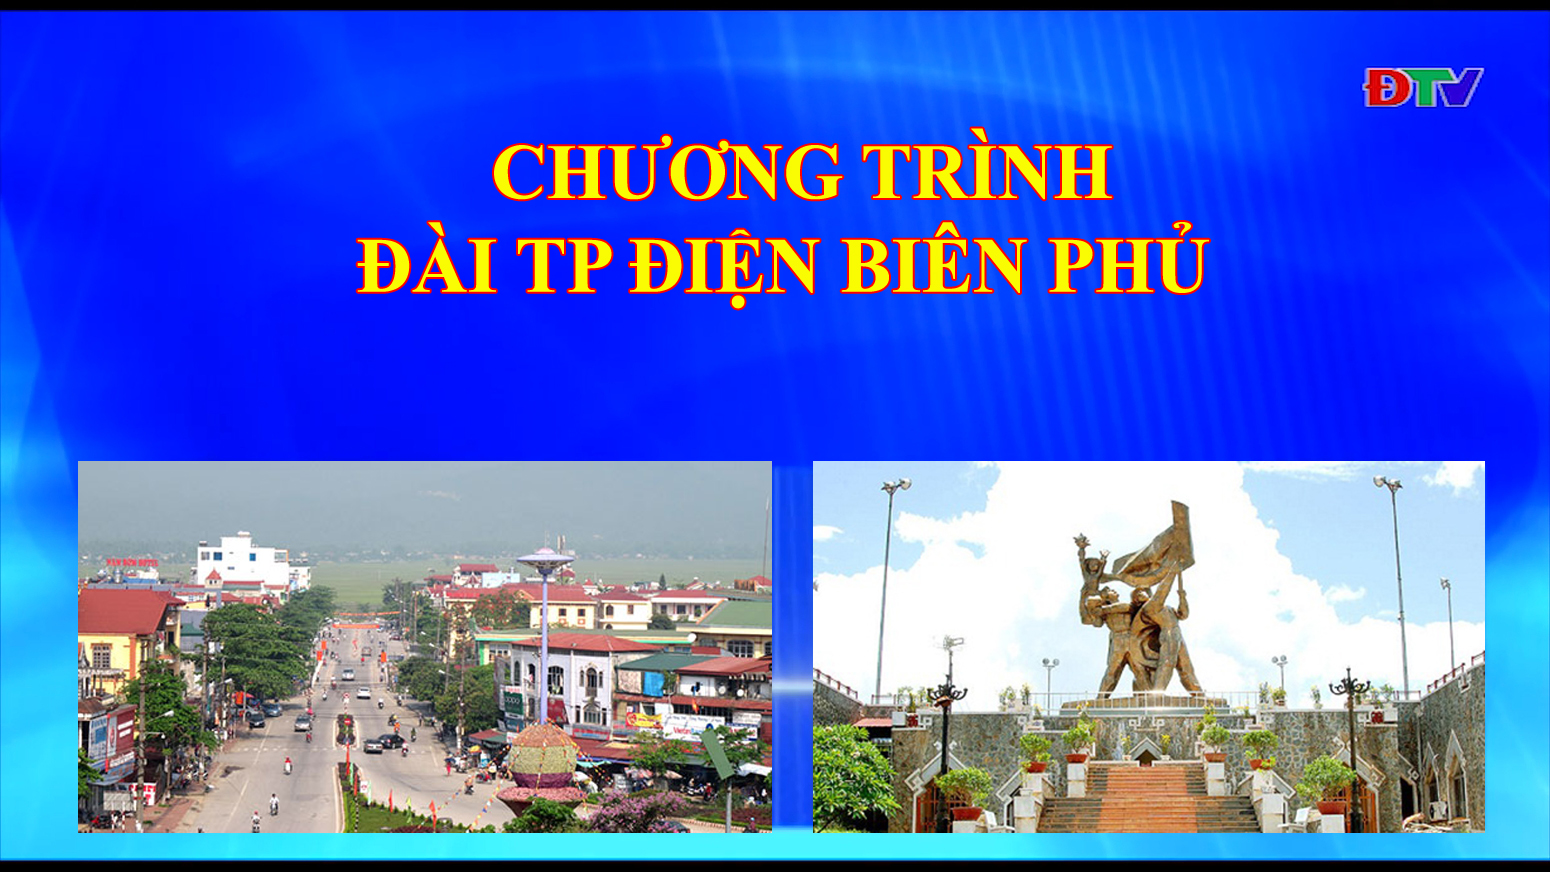 Đài thành phố Điện Biên Phủ (Ngày 14/01/2020)